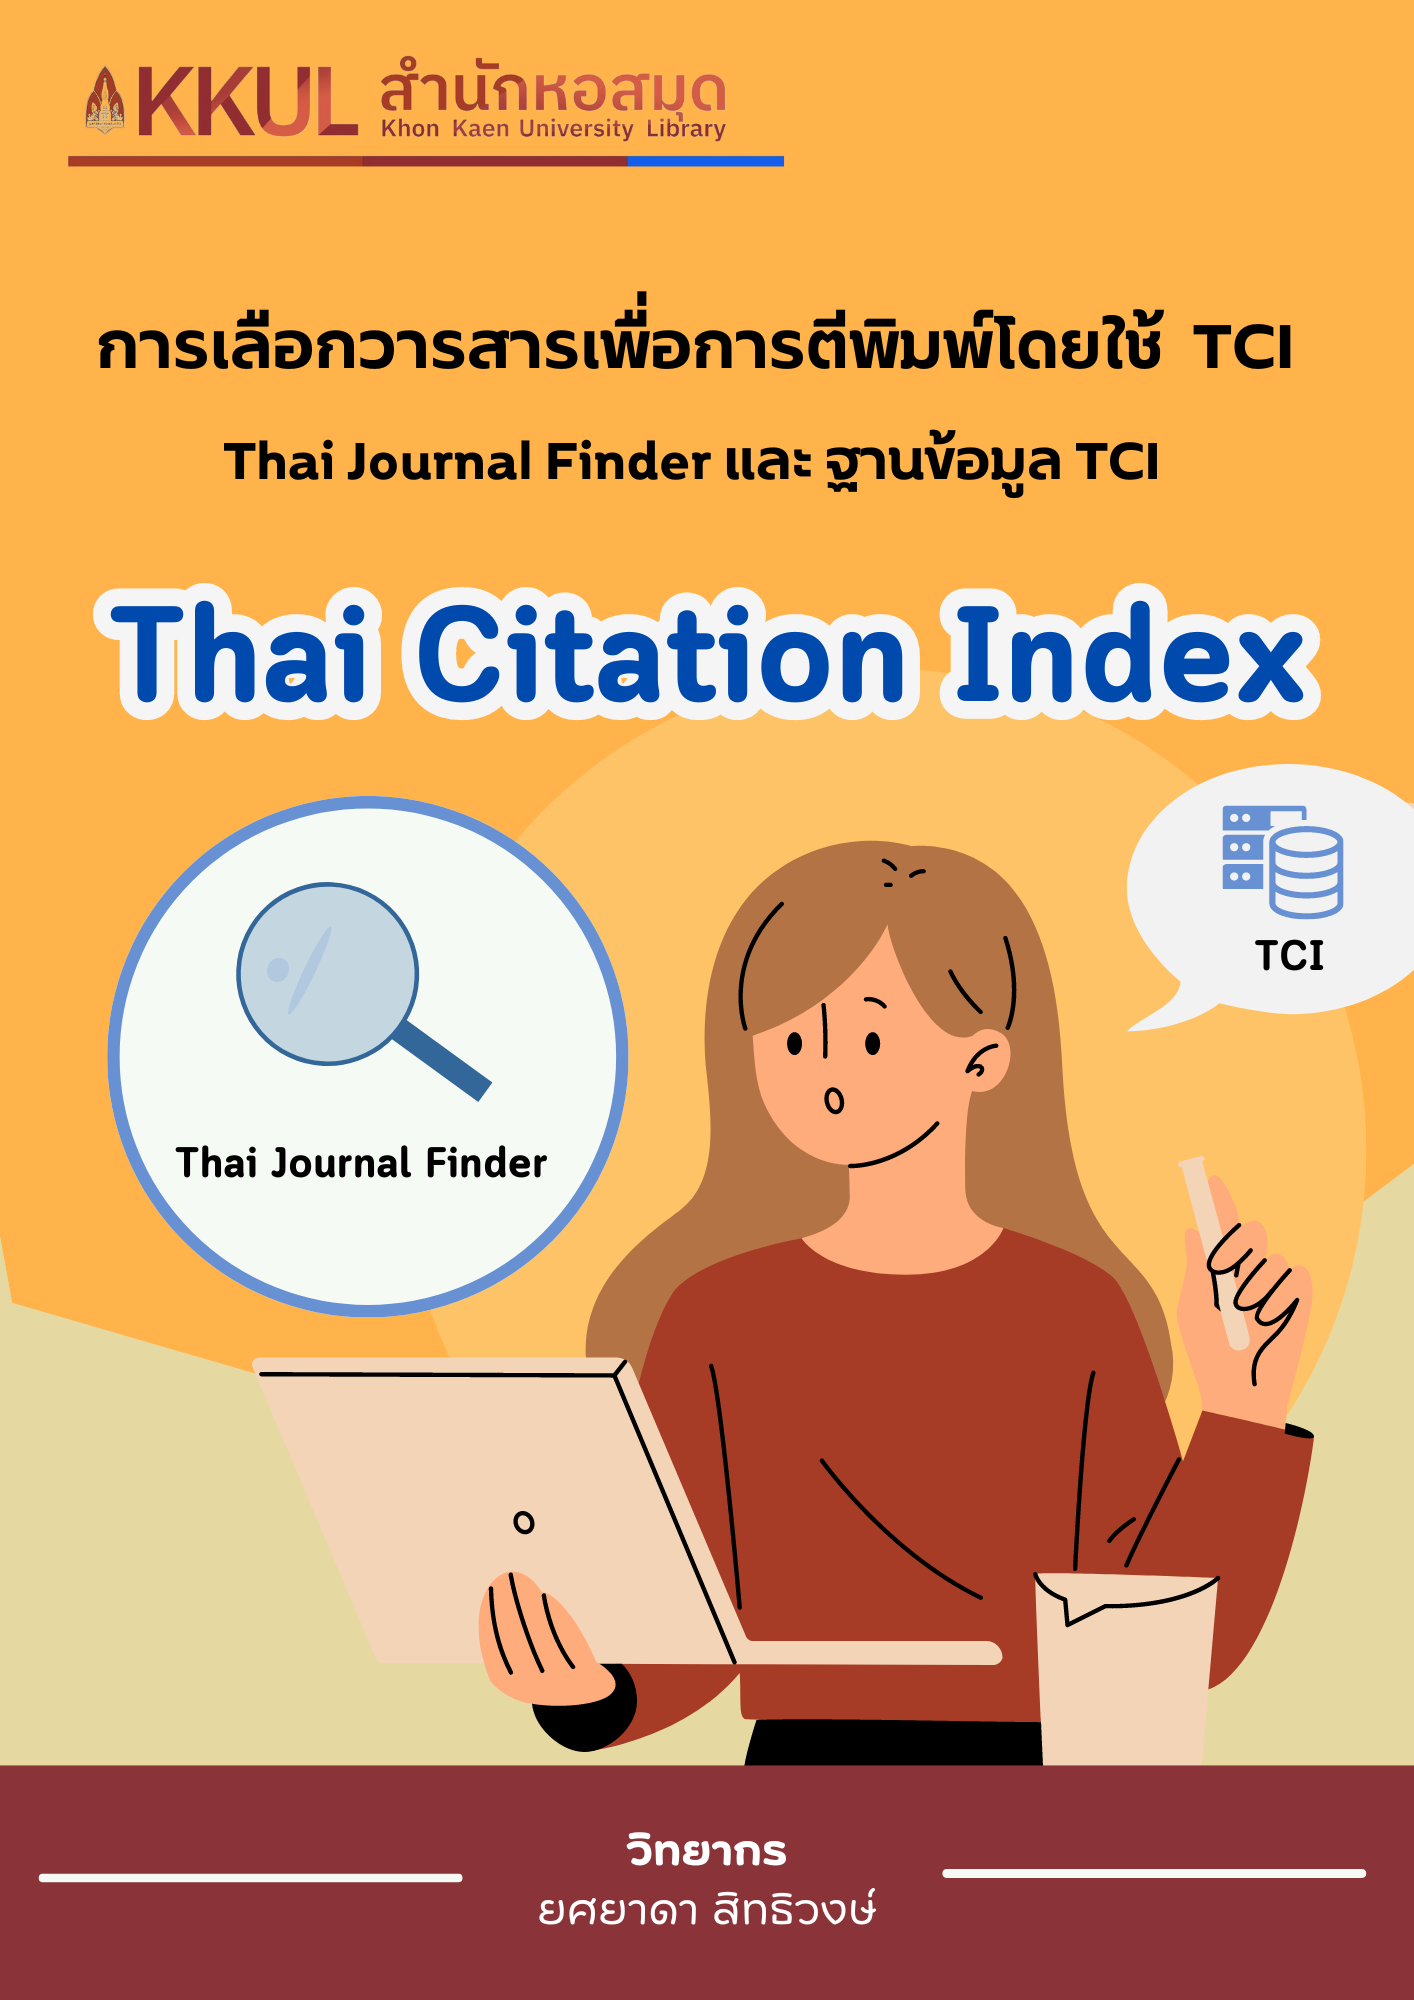 การเลือกวารสารเพื่อการตีพิมพ์โดยใช้ Thai Journal Finder และฐานข้อมูล TCI